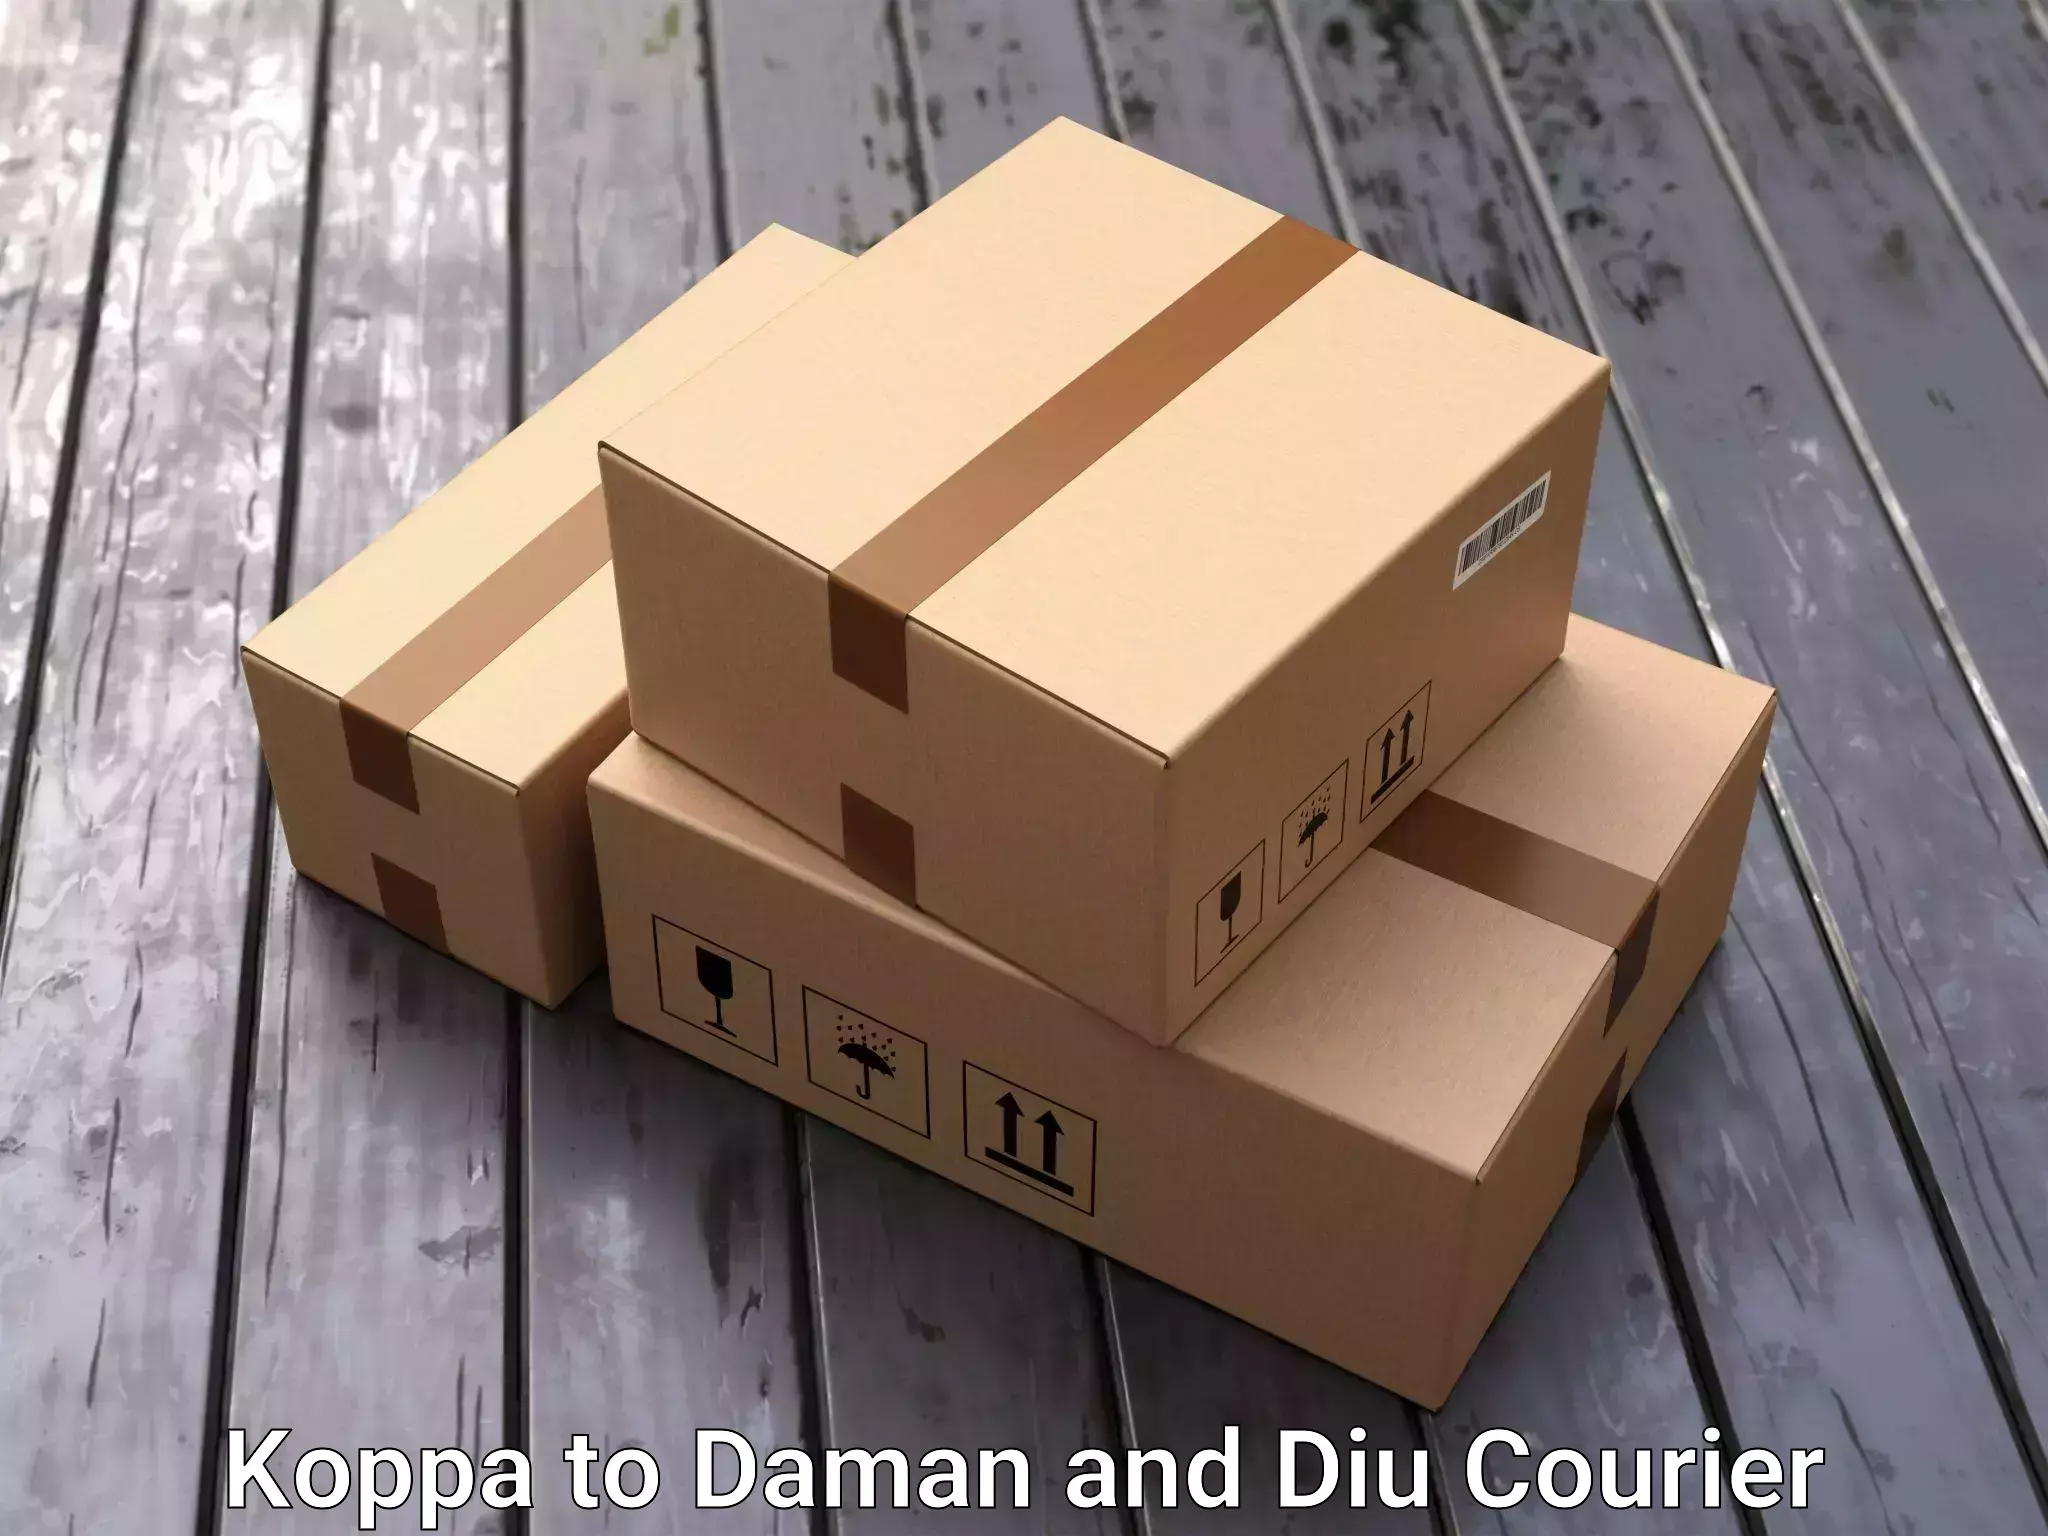 Skilled furniture transporters Koppa to Daman and Diu